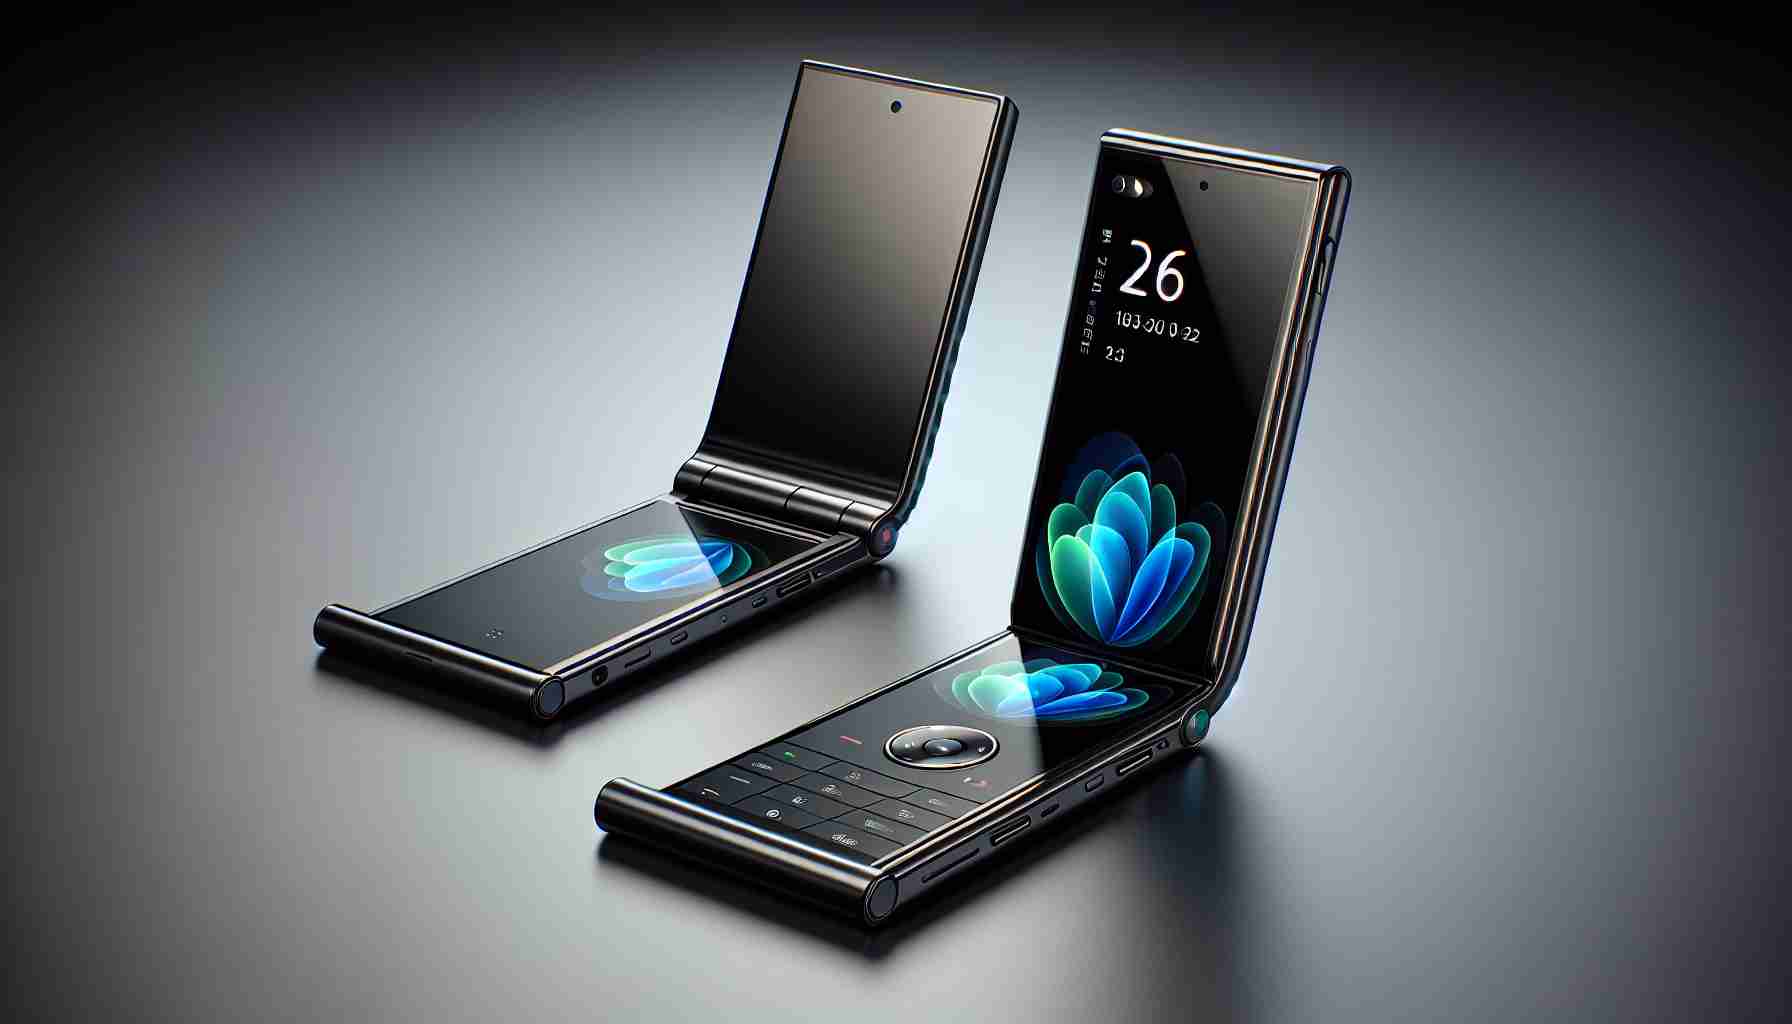 Motorola’s Next-Gen Razr Phones Unveiled in Press Renders